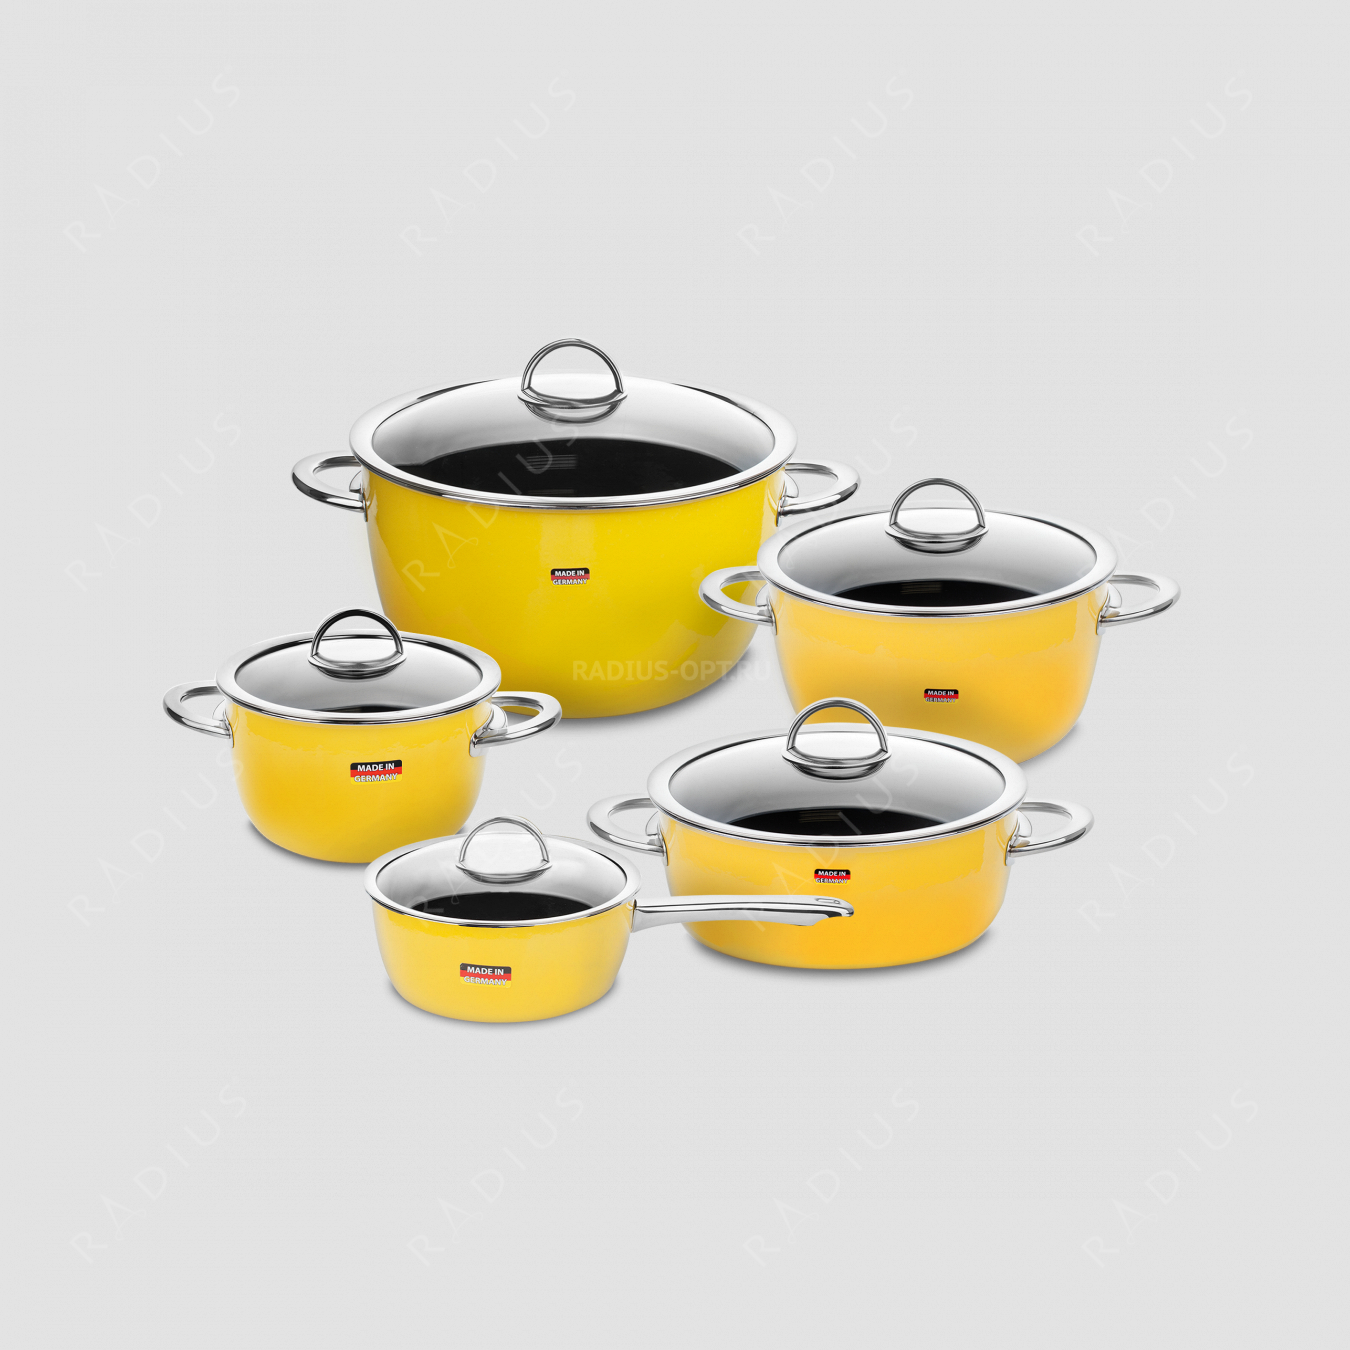 Набор посуды из 5-ти предметов, цвет желтый, серия NEO Yellow, KOCHSTAR, Германия